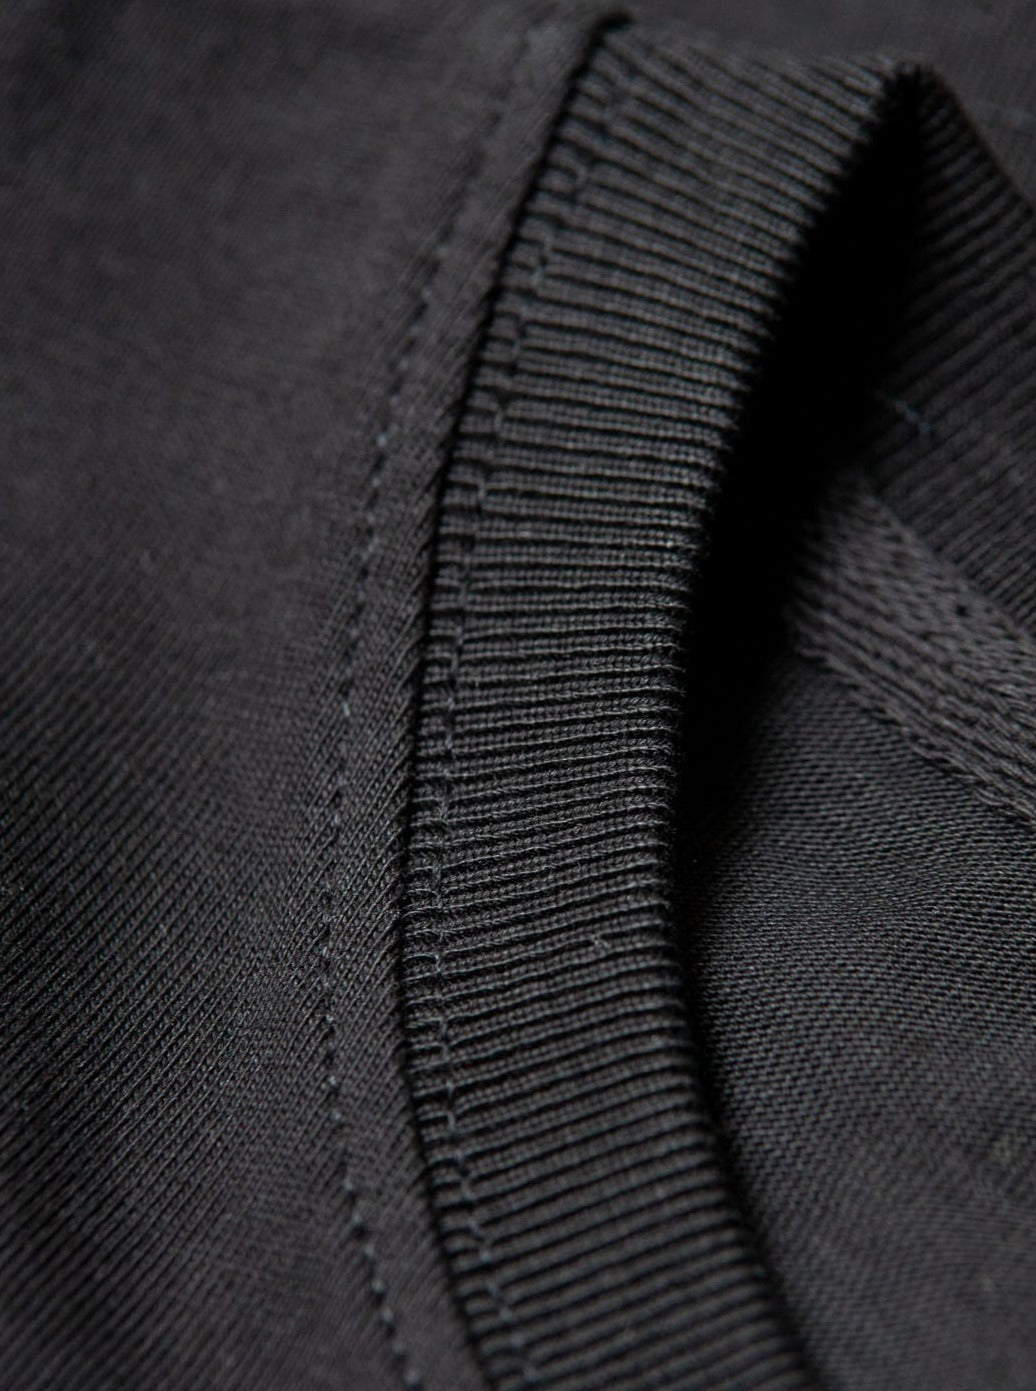 qualitiativ hochwertig, preiswert und nachhaltiges Basic T-Shirt in schwarz von FUXBAU.